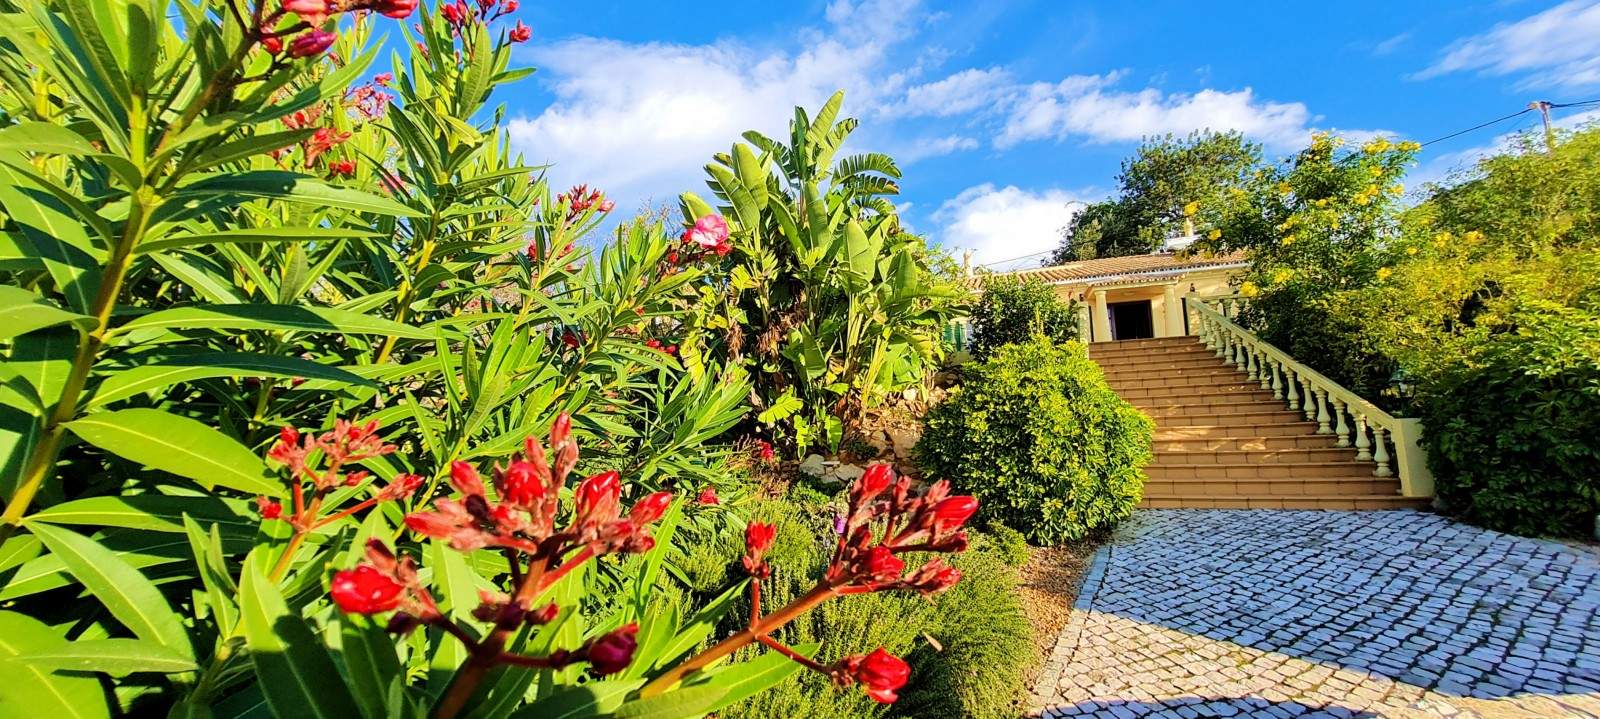 Moradia V2 com jardim, para venda, em São Brás de Alportel, Algarve_203388